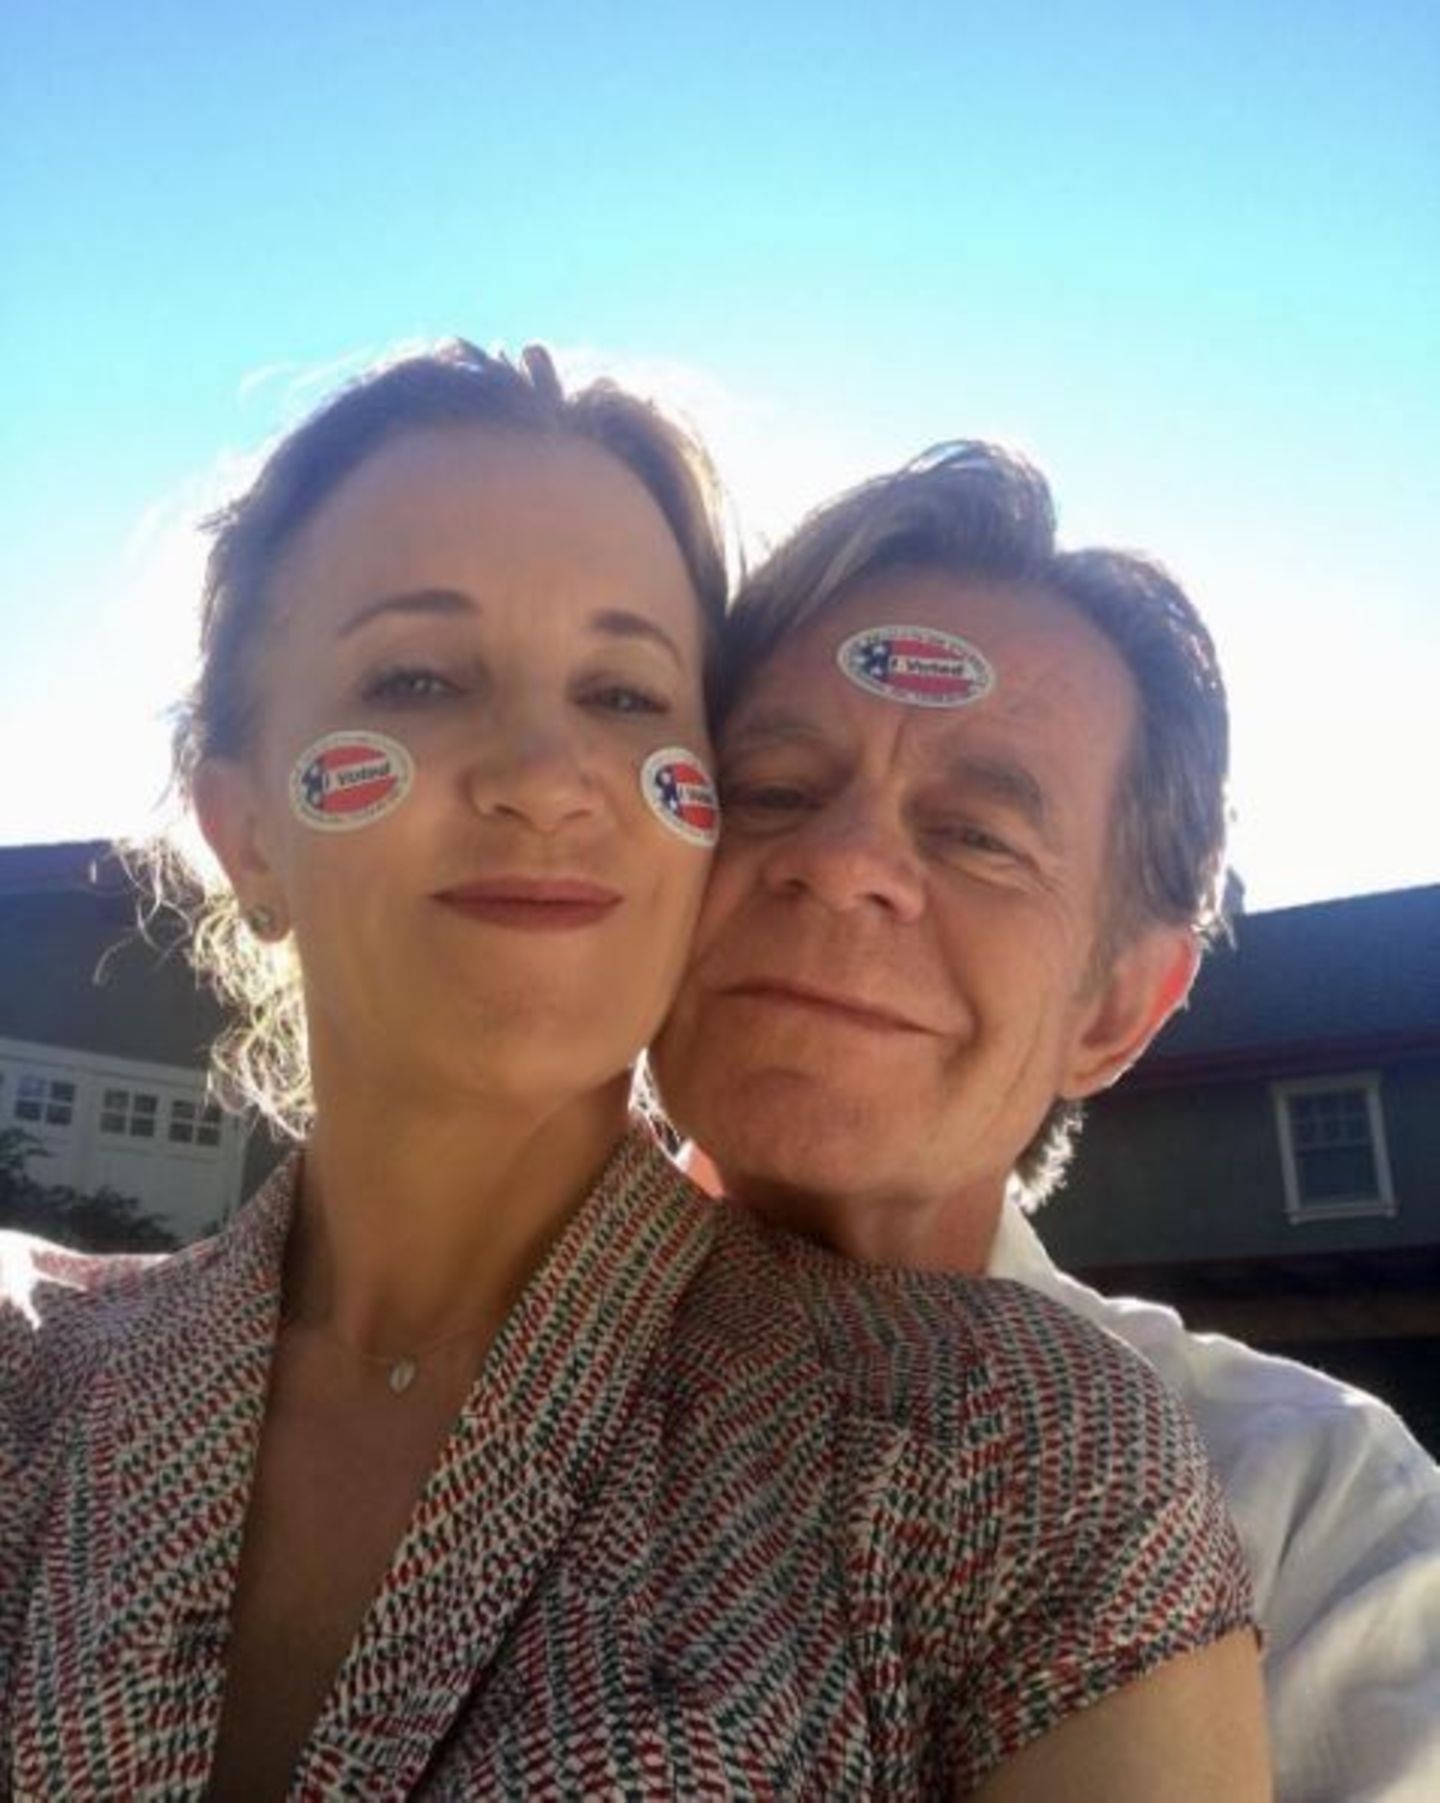 Schauspielerin Felicity Huffman und ihr Ehemann William Macy: "Wir lieben Hillary!"